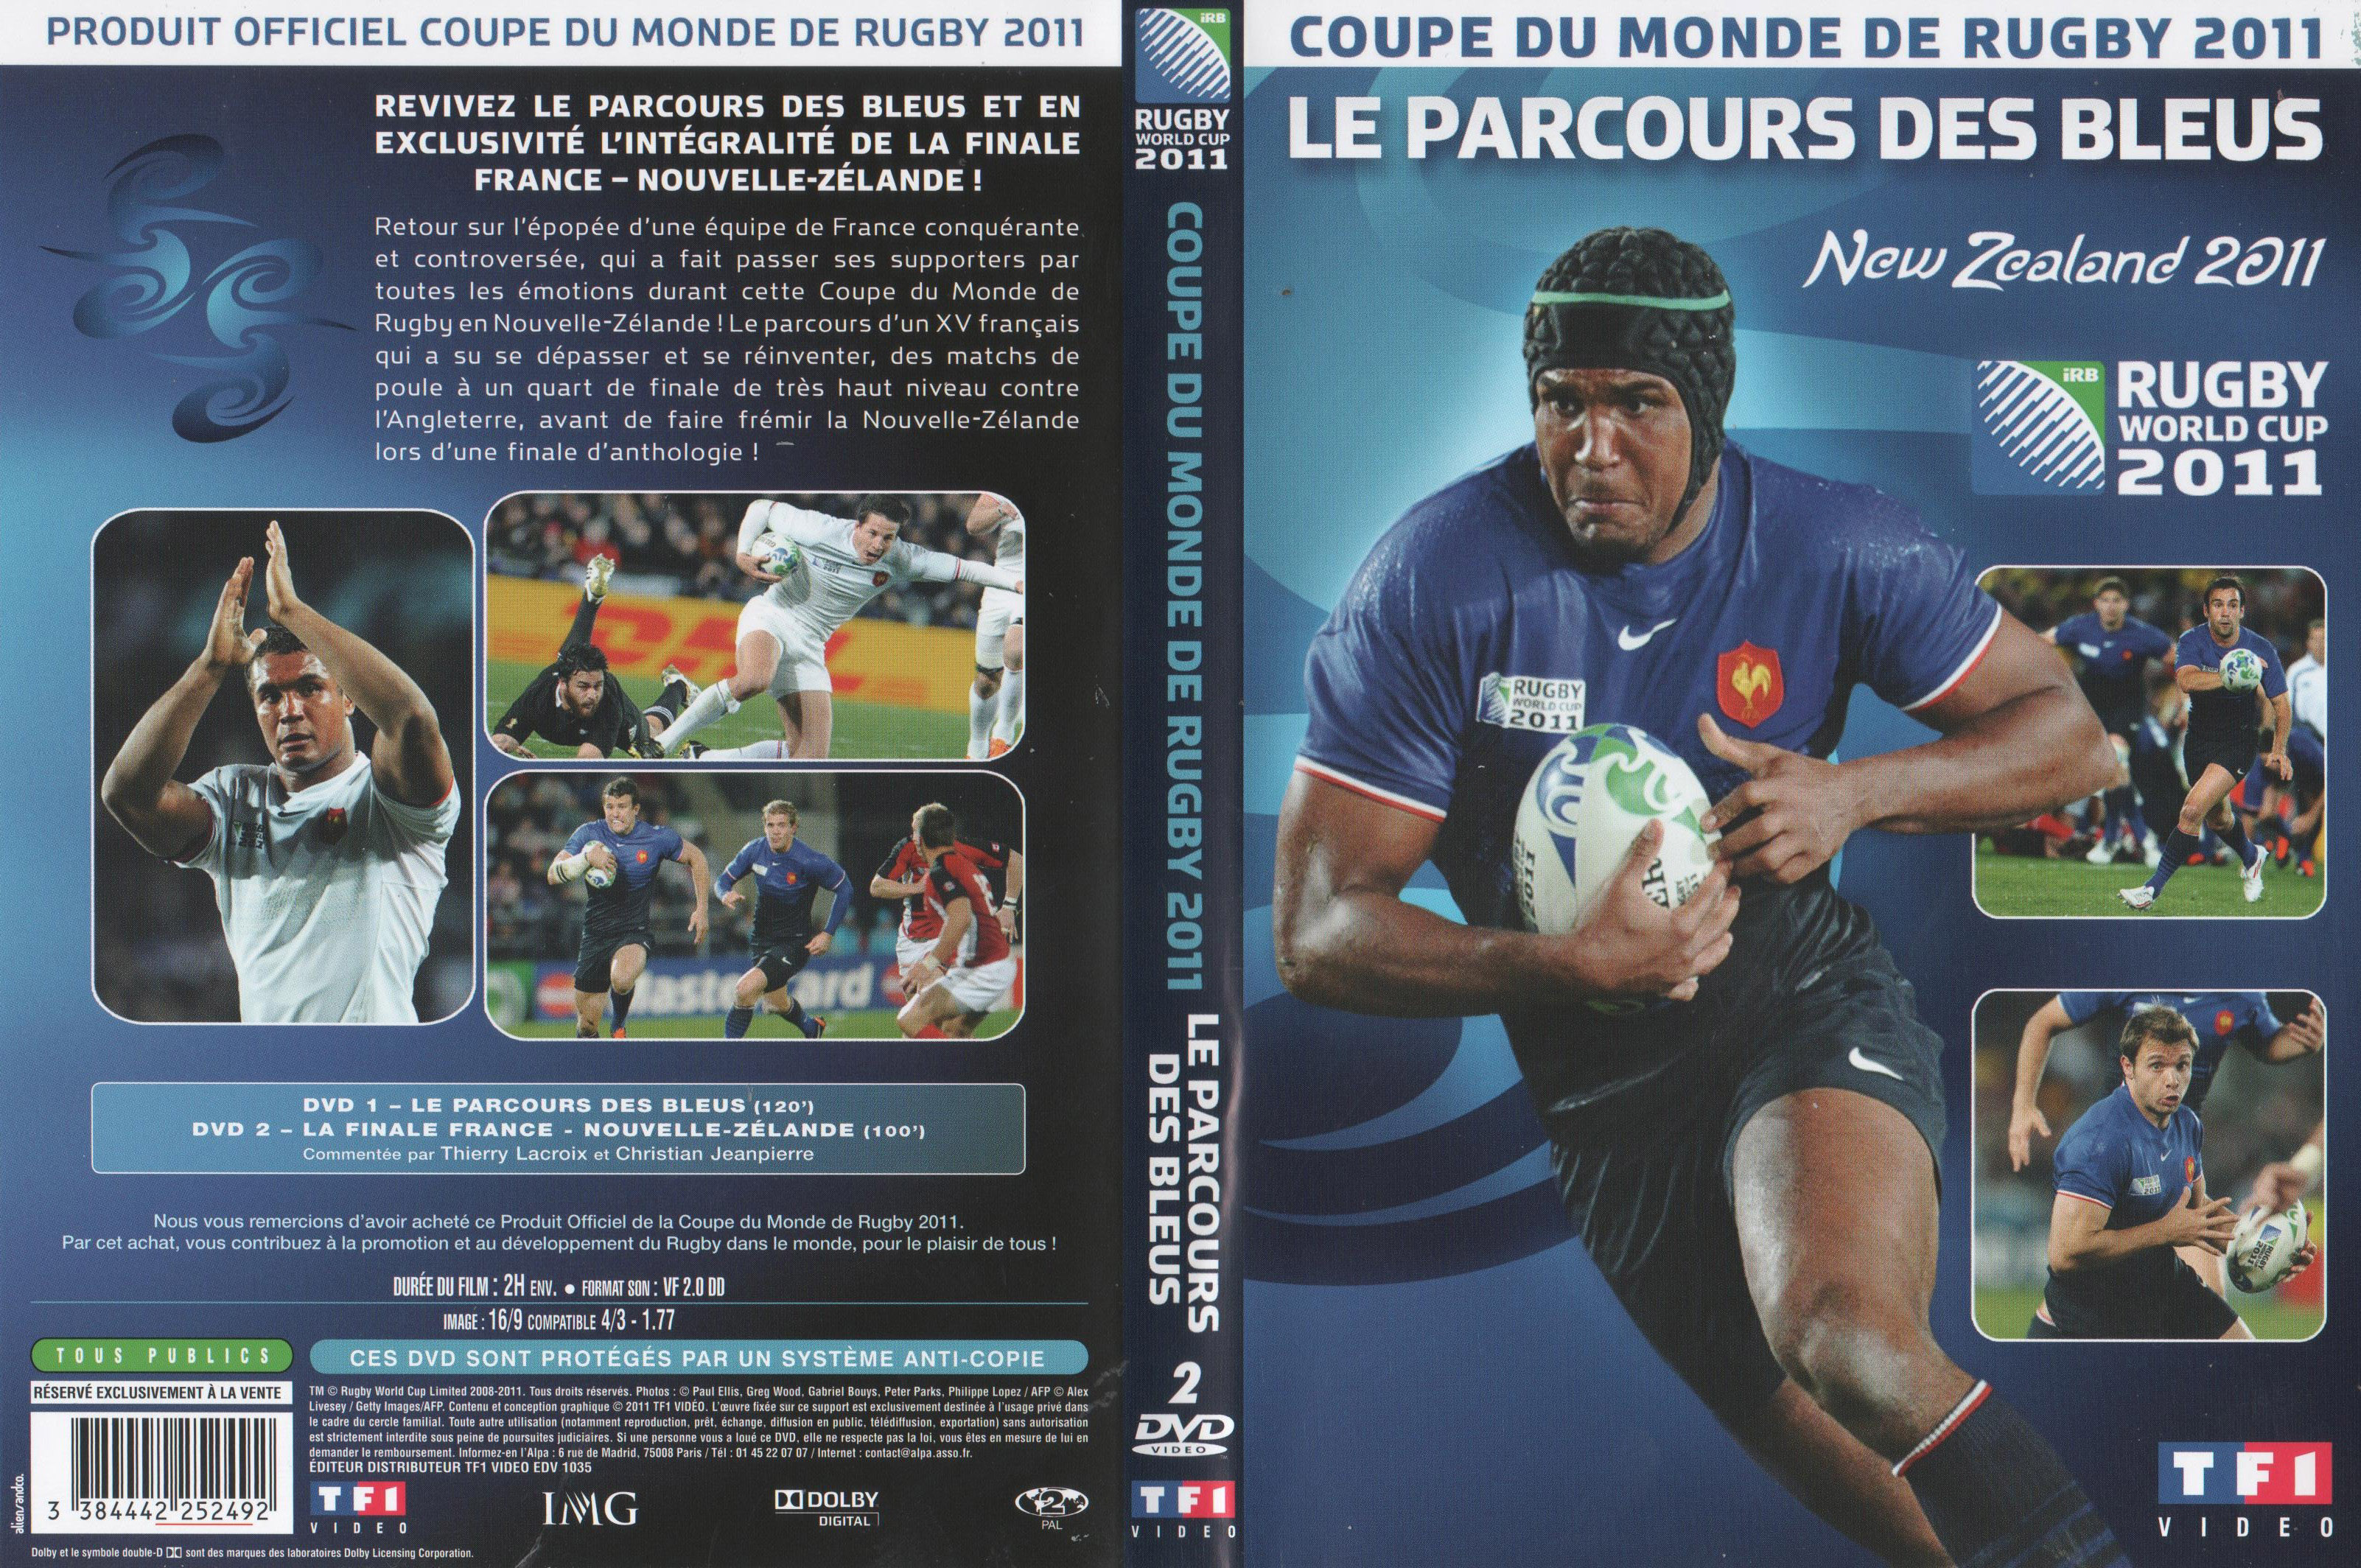 Jaquette DVD Coupe du Monde de Rugby 2011 (Le Parcours des Bleus)